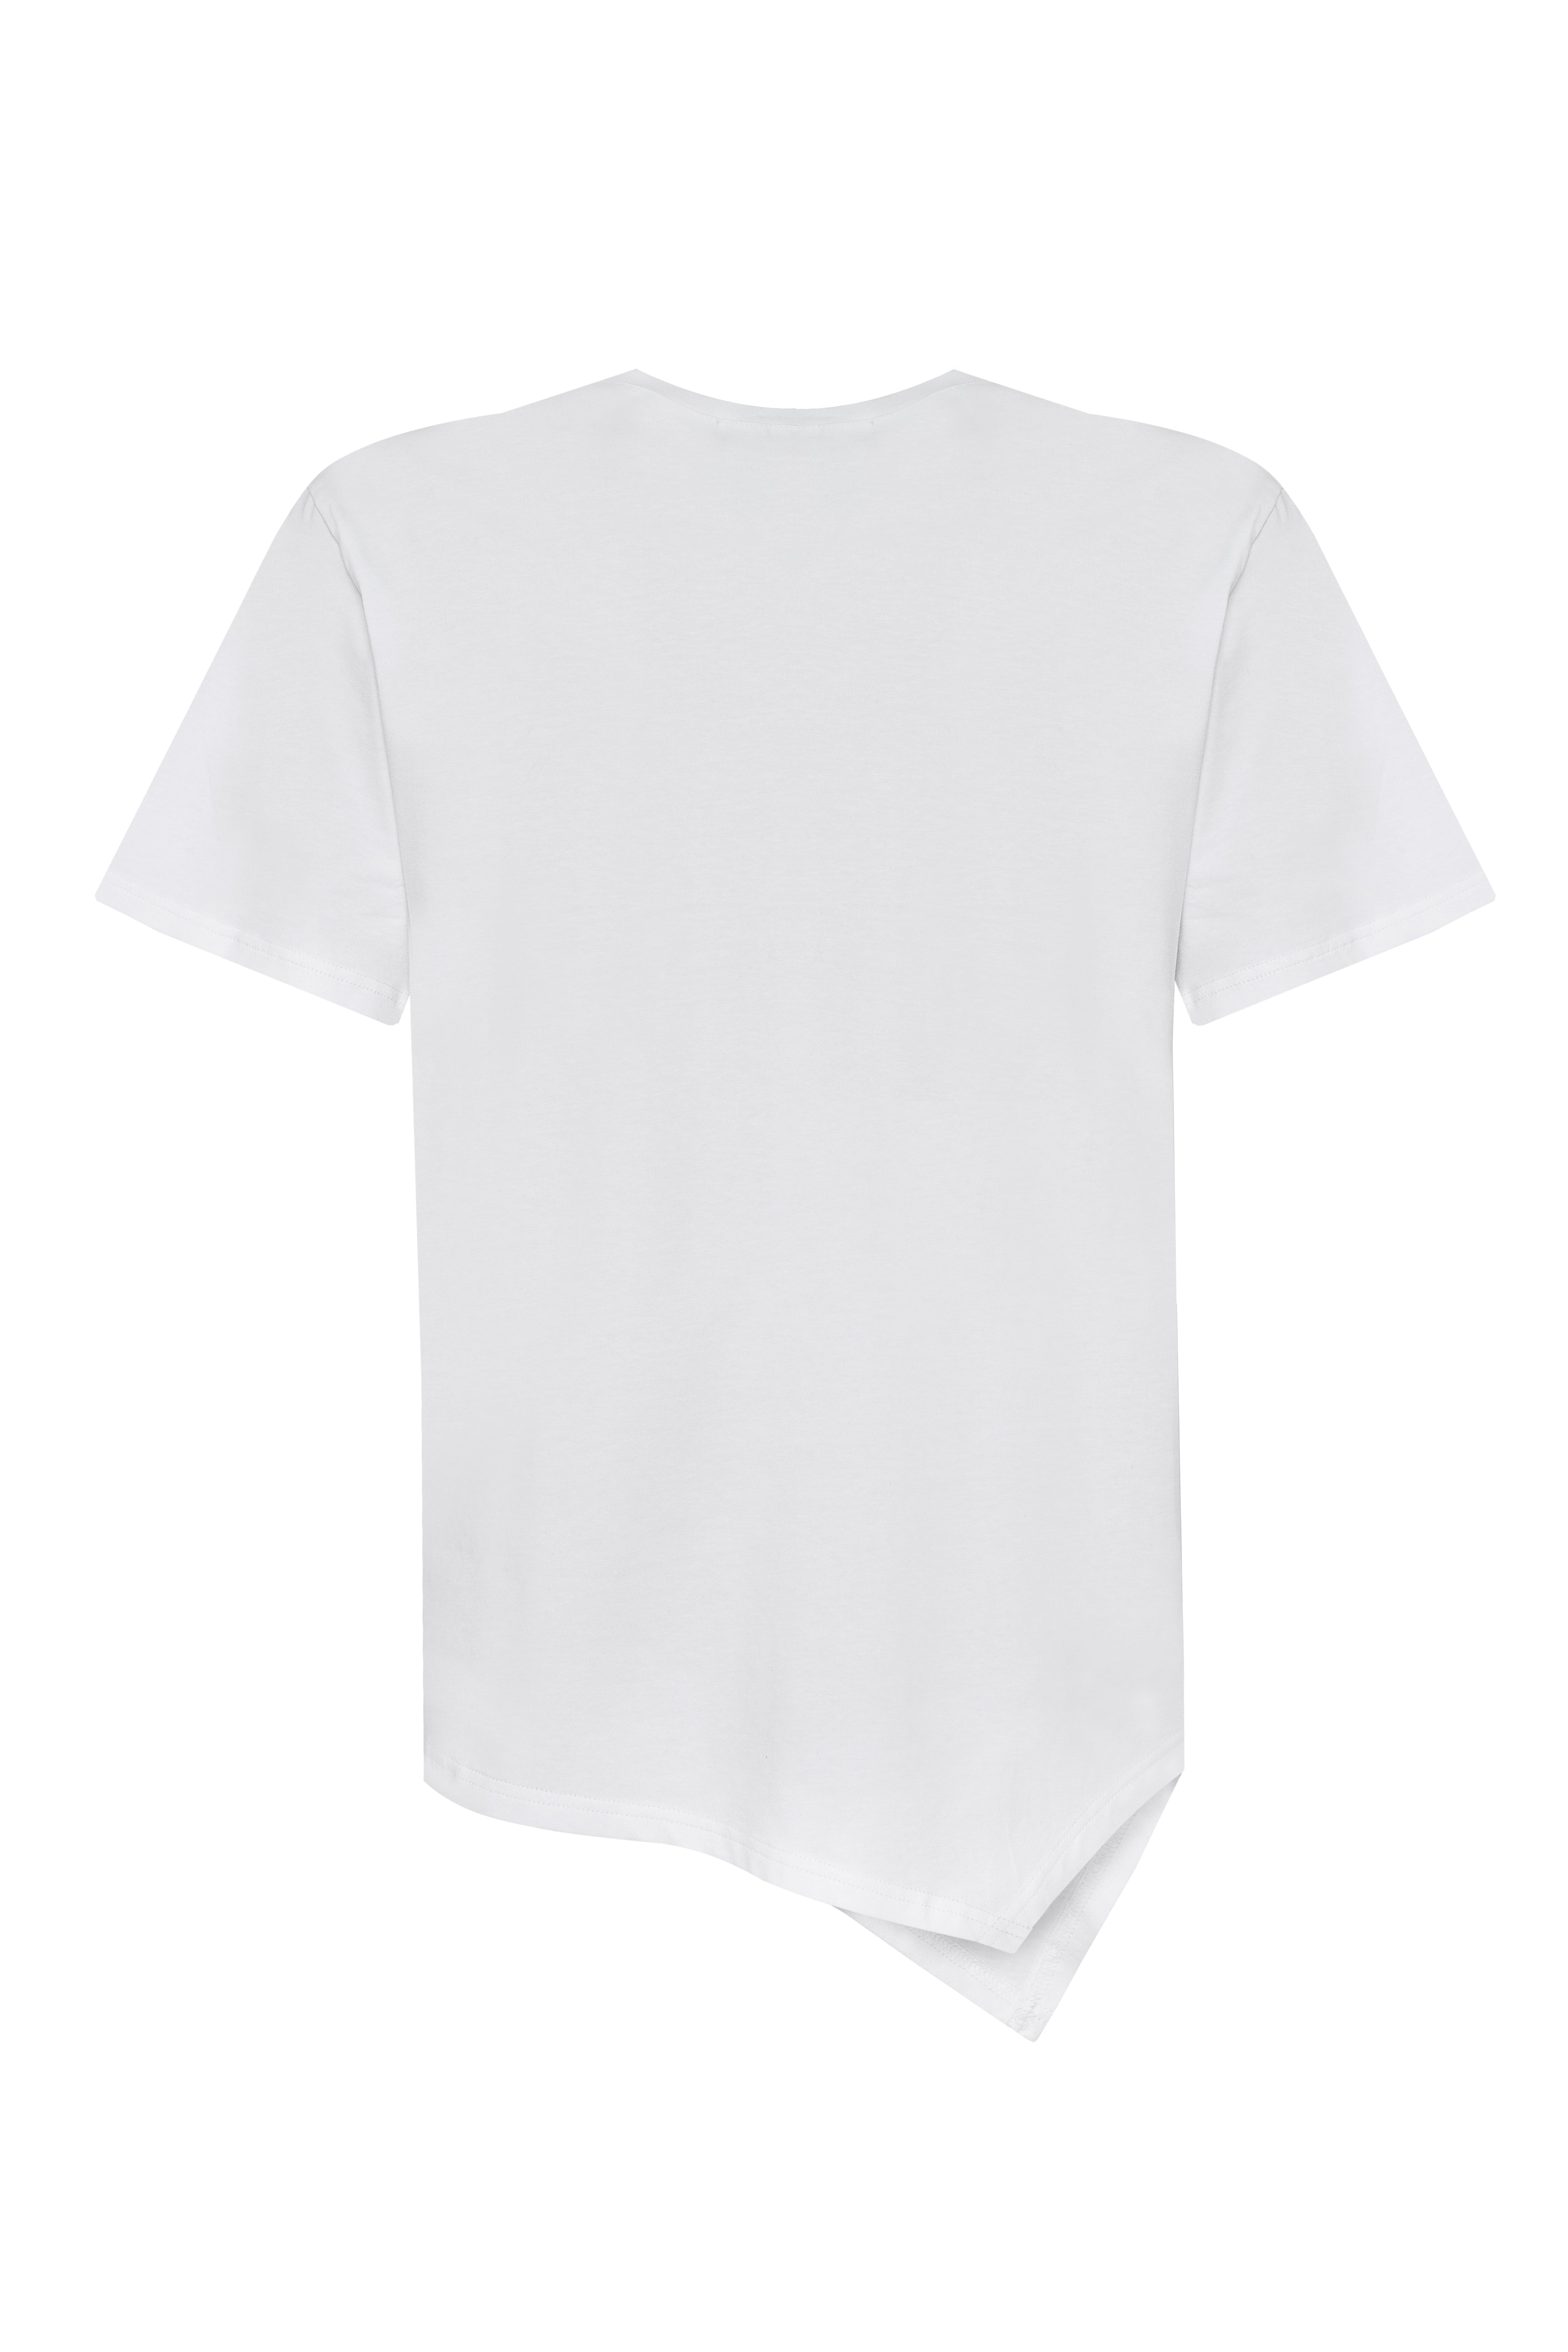 MDNT45 Zaidan T-shirt White